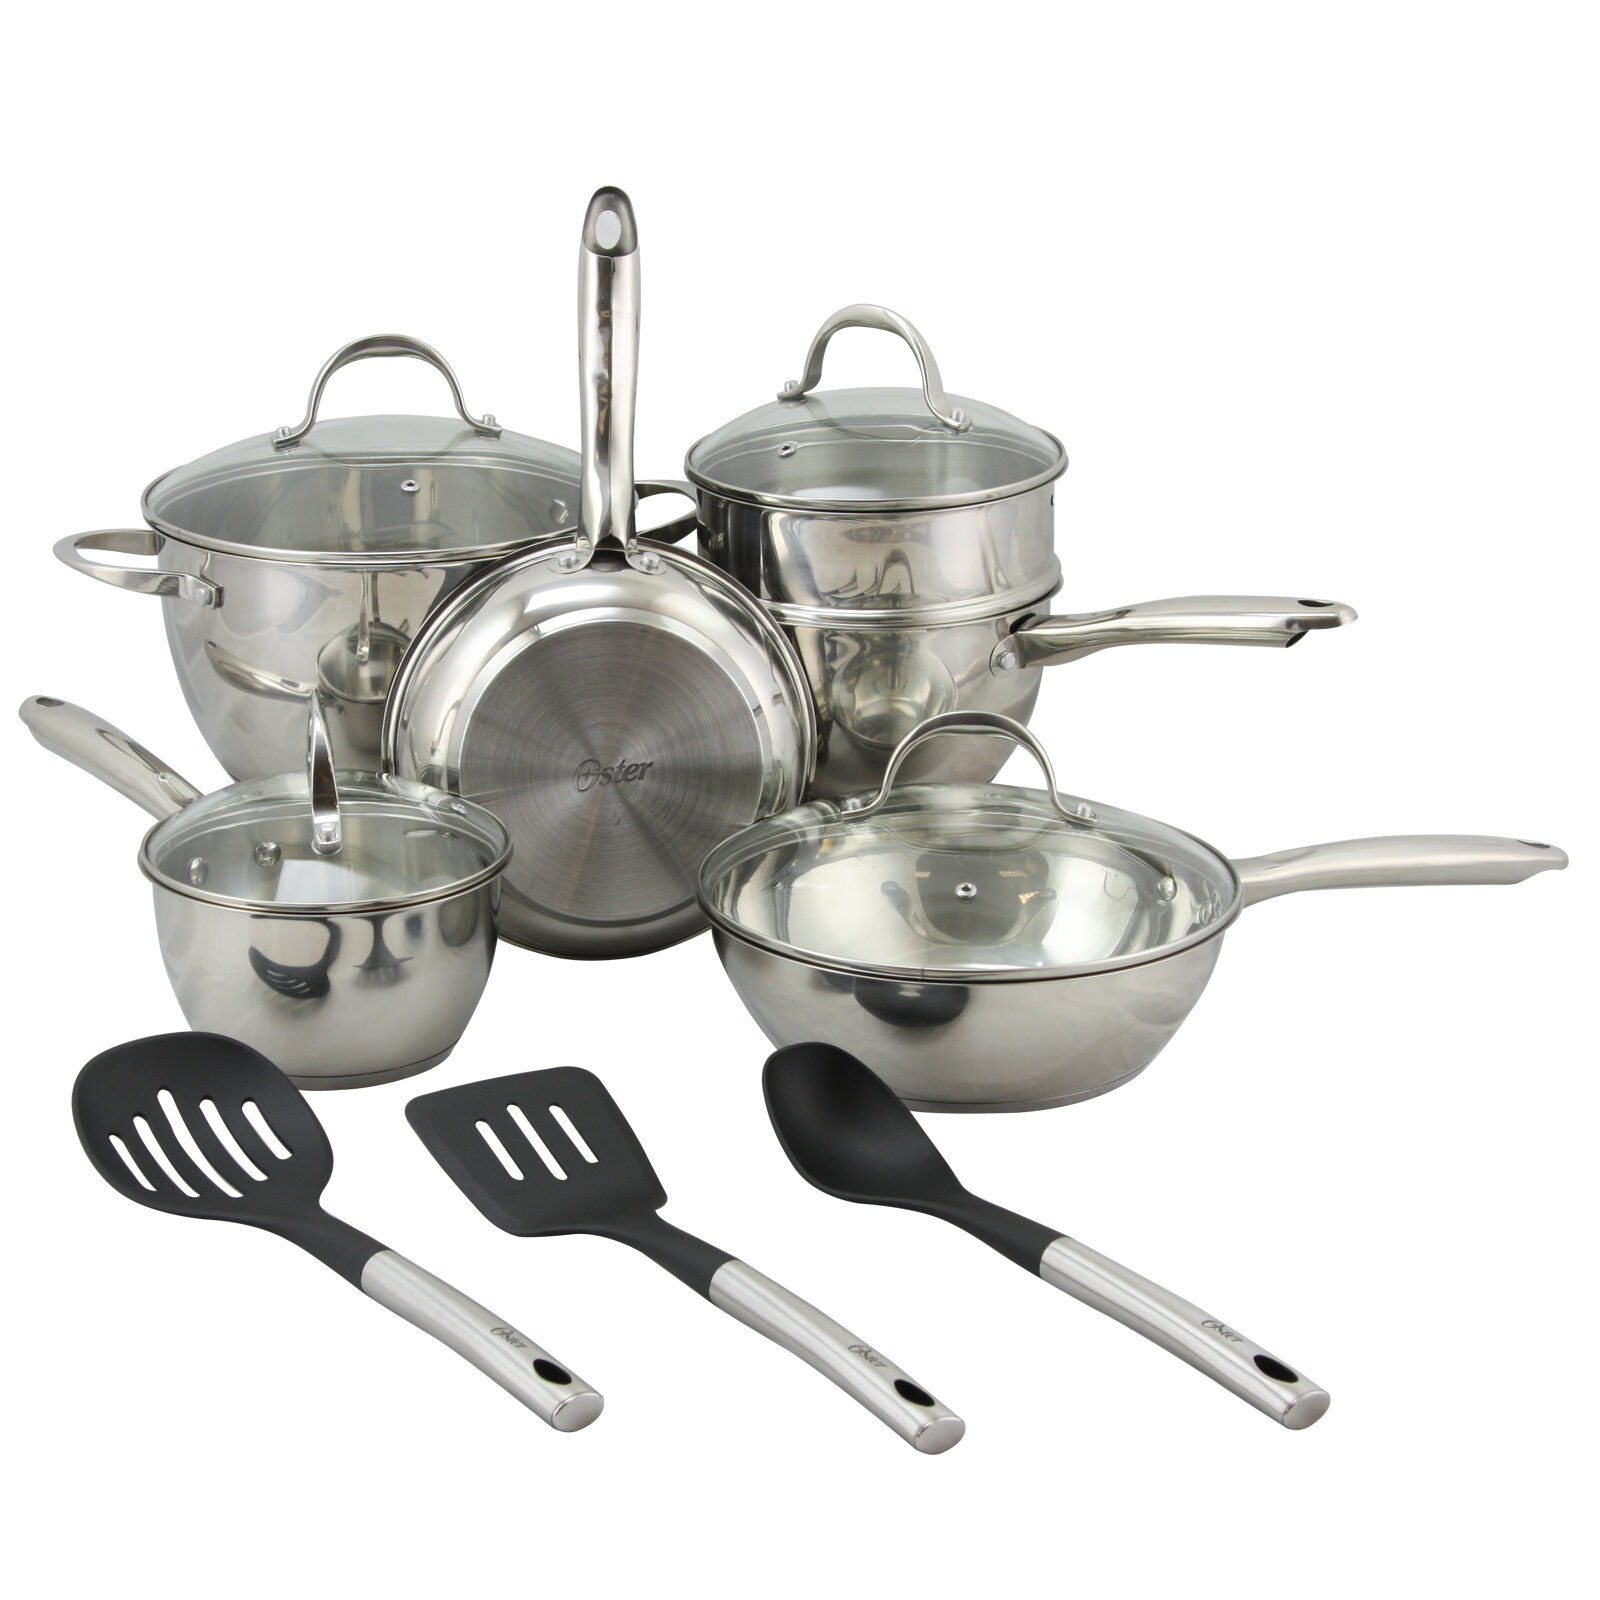 https://assets.wfcdn.com/im/80370057/compr-r85/4663/46636743/oster-12-piece-stainless-steel-cookware-set.jpg